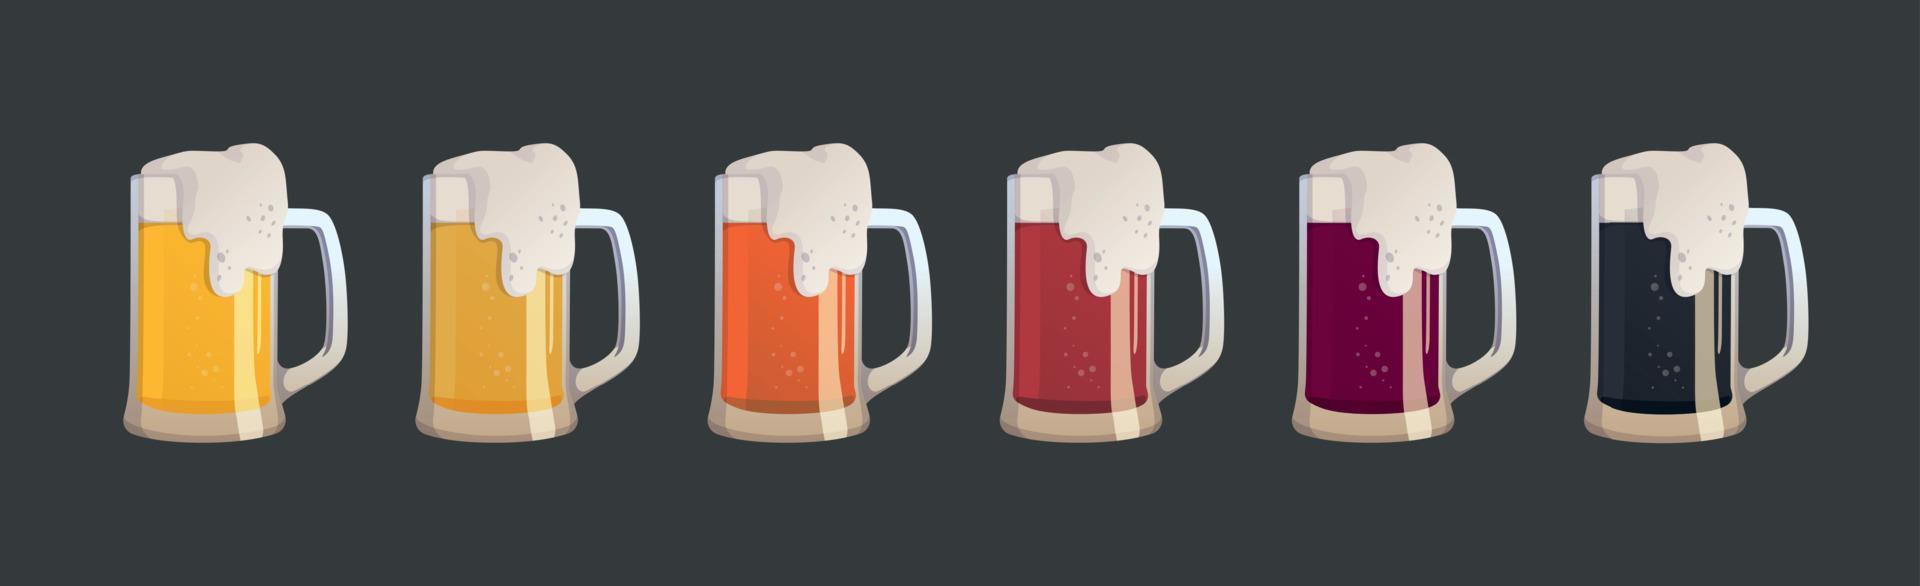 conjunto de 6 tazas de diferentes tipos de cerveza - vector